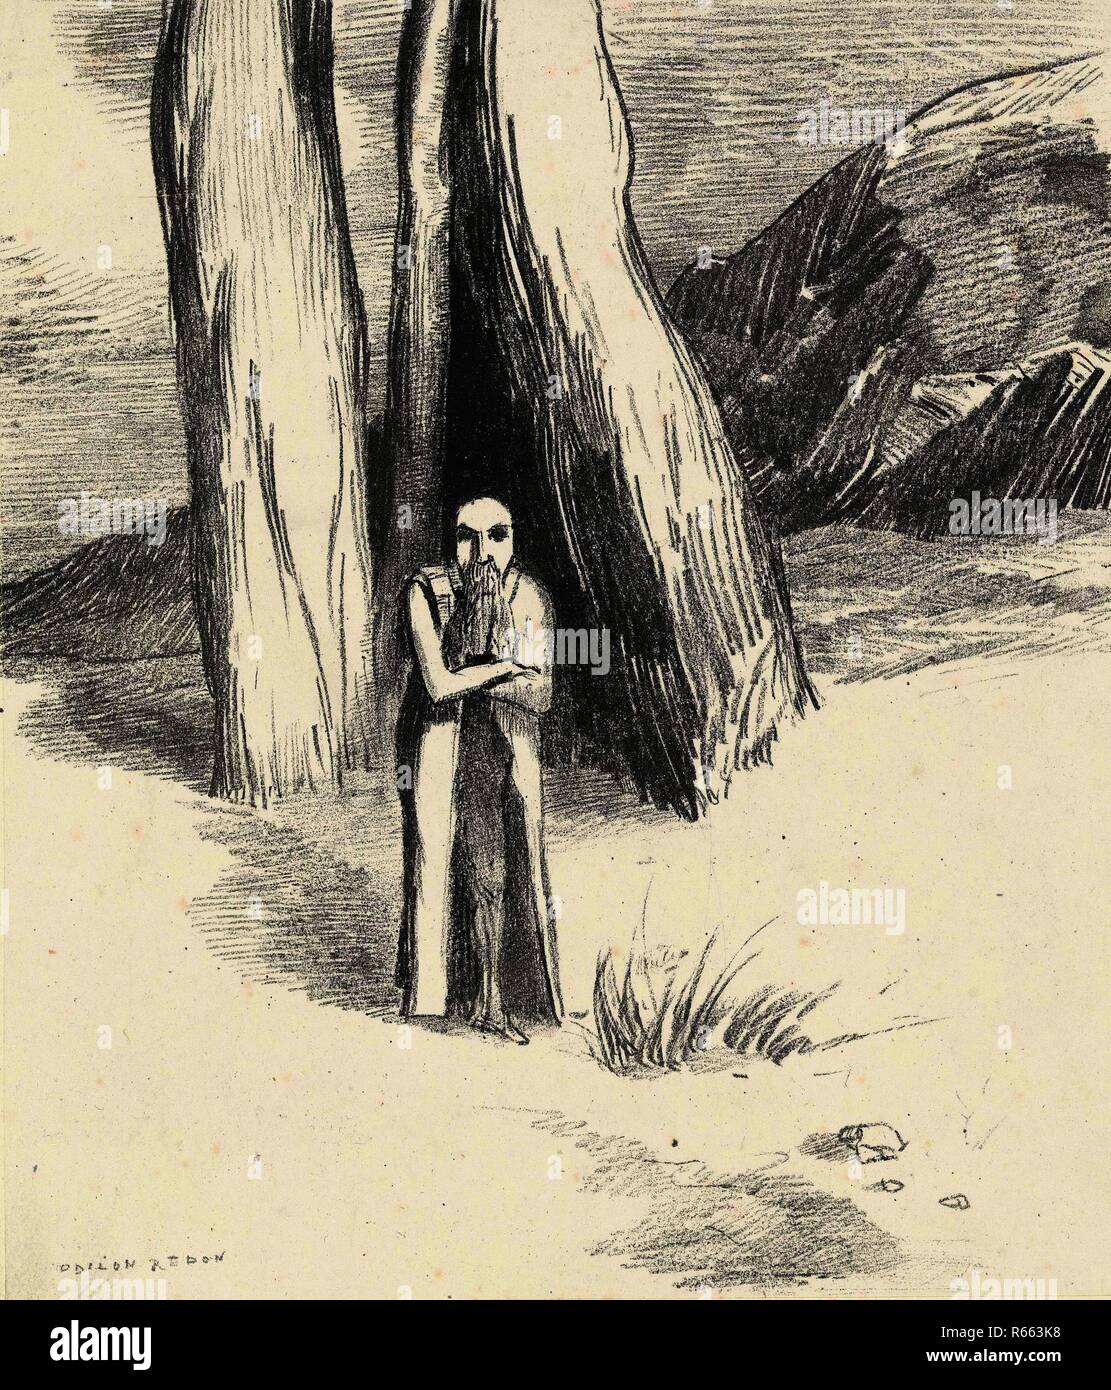 Ein Verrückter in einer düsteren Landschaft (Un fou dans un Morne paysage) aus der Serie Hommage à Goya. Abmessungen: 42,8 cm x 31 cm, 22,8 cm x 19,5 cm, 22,8 cm x 19,5 cm. Museum: Van Gogh Museum, Amsterdam. Autor: Redon, Odilon. Stockfoto